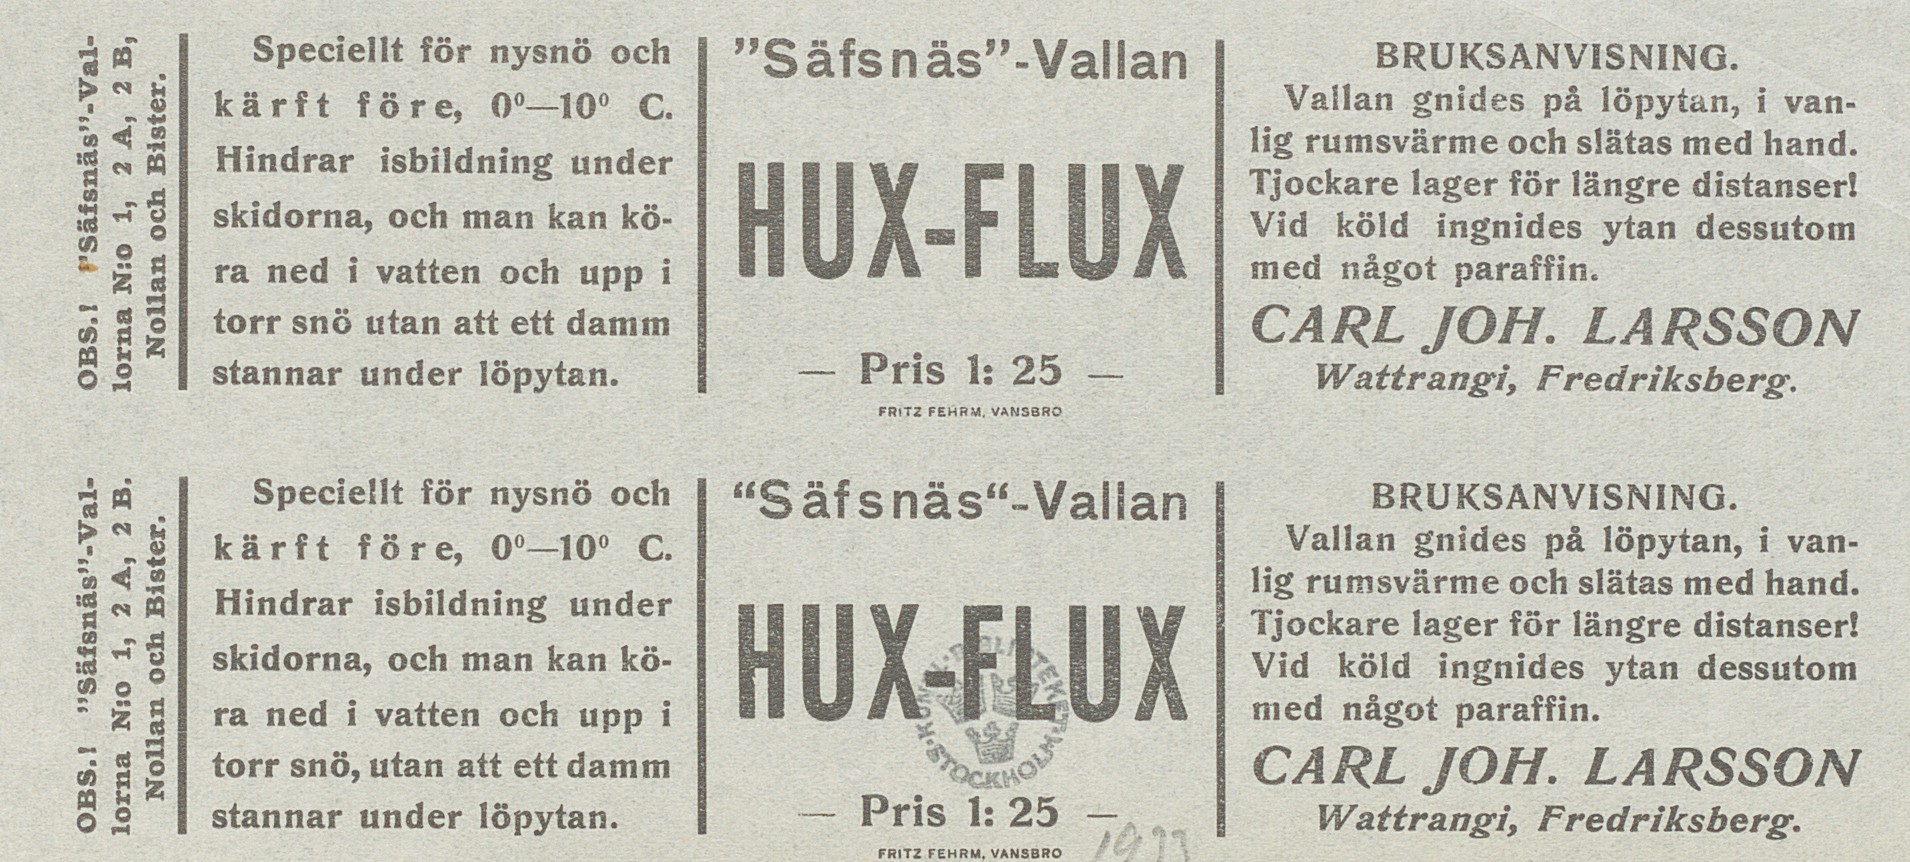 Reklam för skidvallan Hux-Flux.